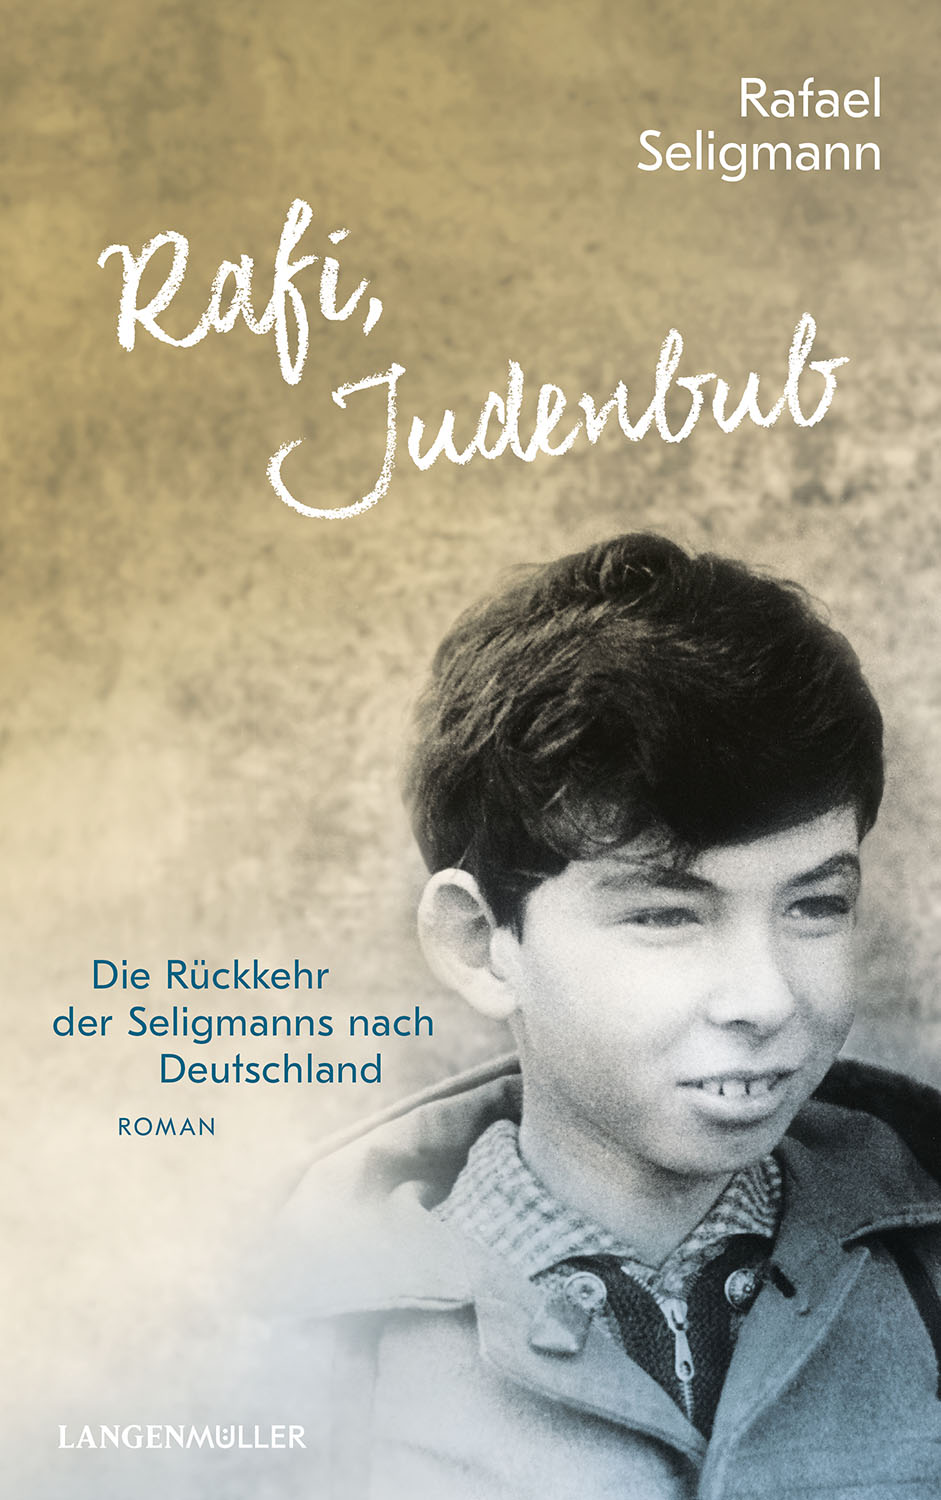 Cover des Buchs "Rafi, Judenbub" von Rafael Seligmann. Foto des schwarzhaarigen Jungen unten rechts vor einem ockerfarbenen Hintergrund.